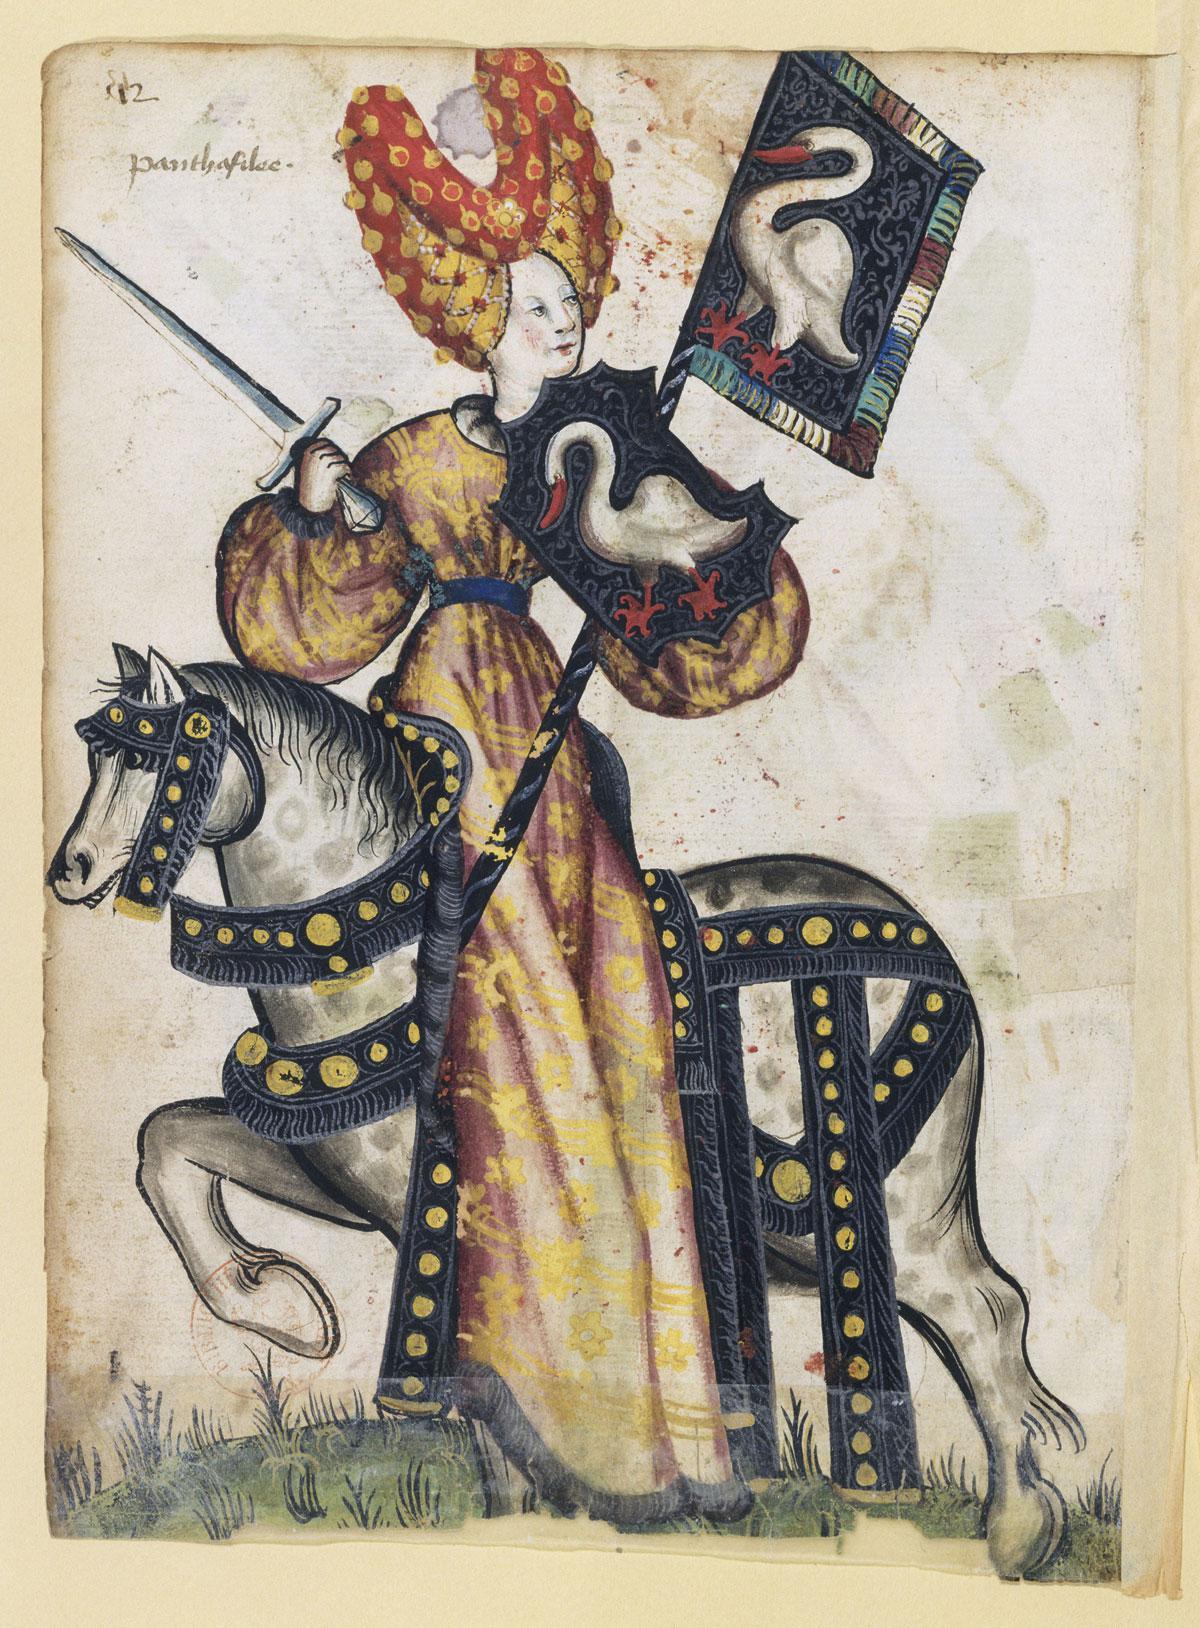 Petit armorial équestre de la Toison d'or, Lille, vers 1435-1440.